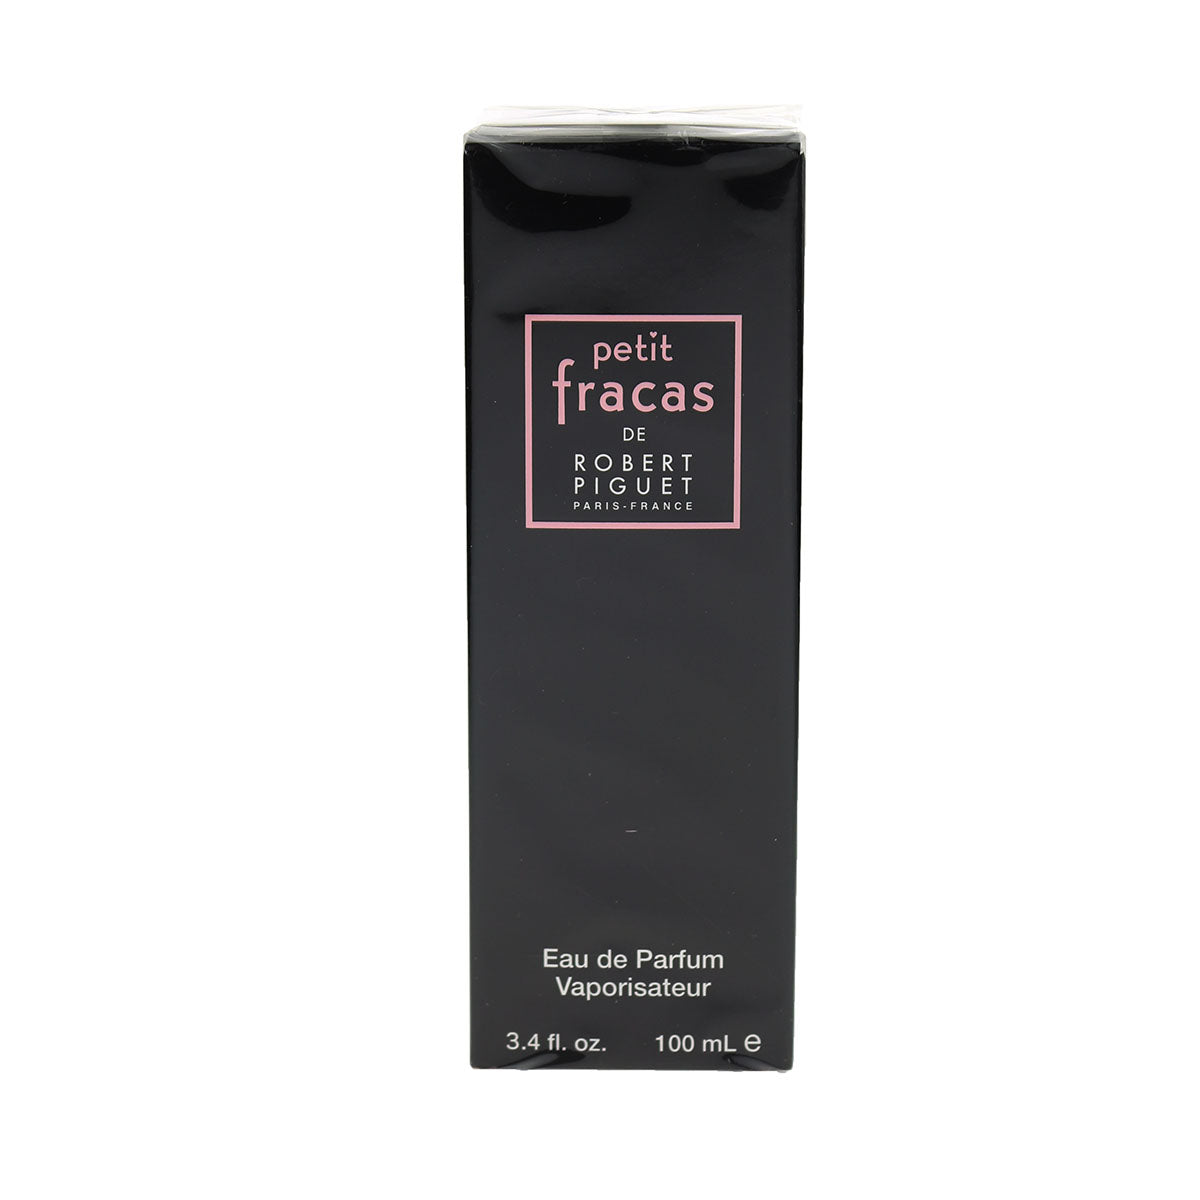 Robert Piguet 'Petit Fracas' Eau de Parfum 3.4oz/100ml Spray New In Box